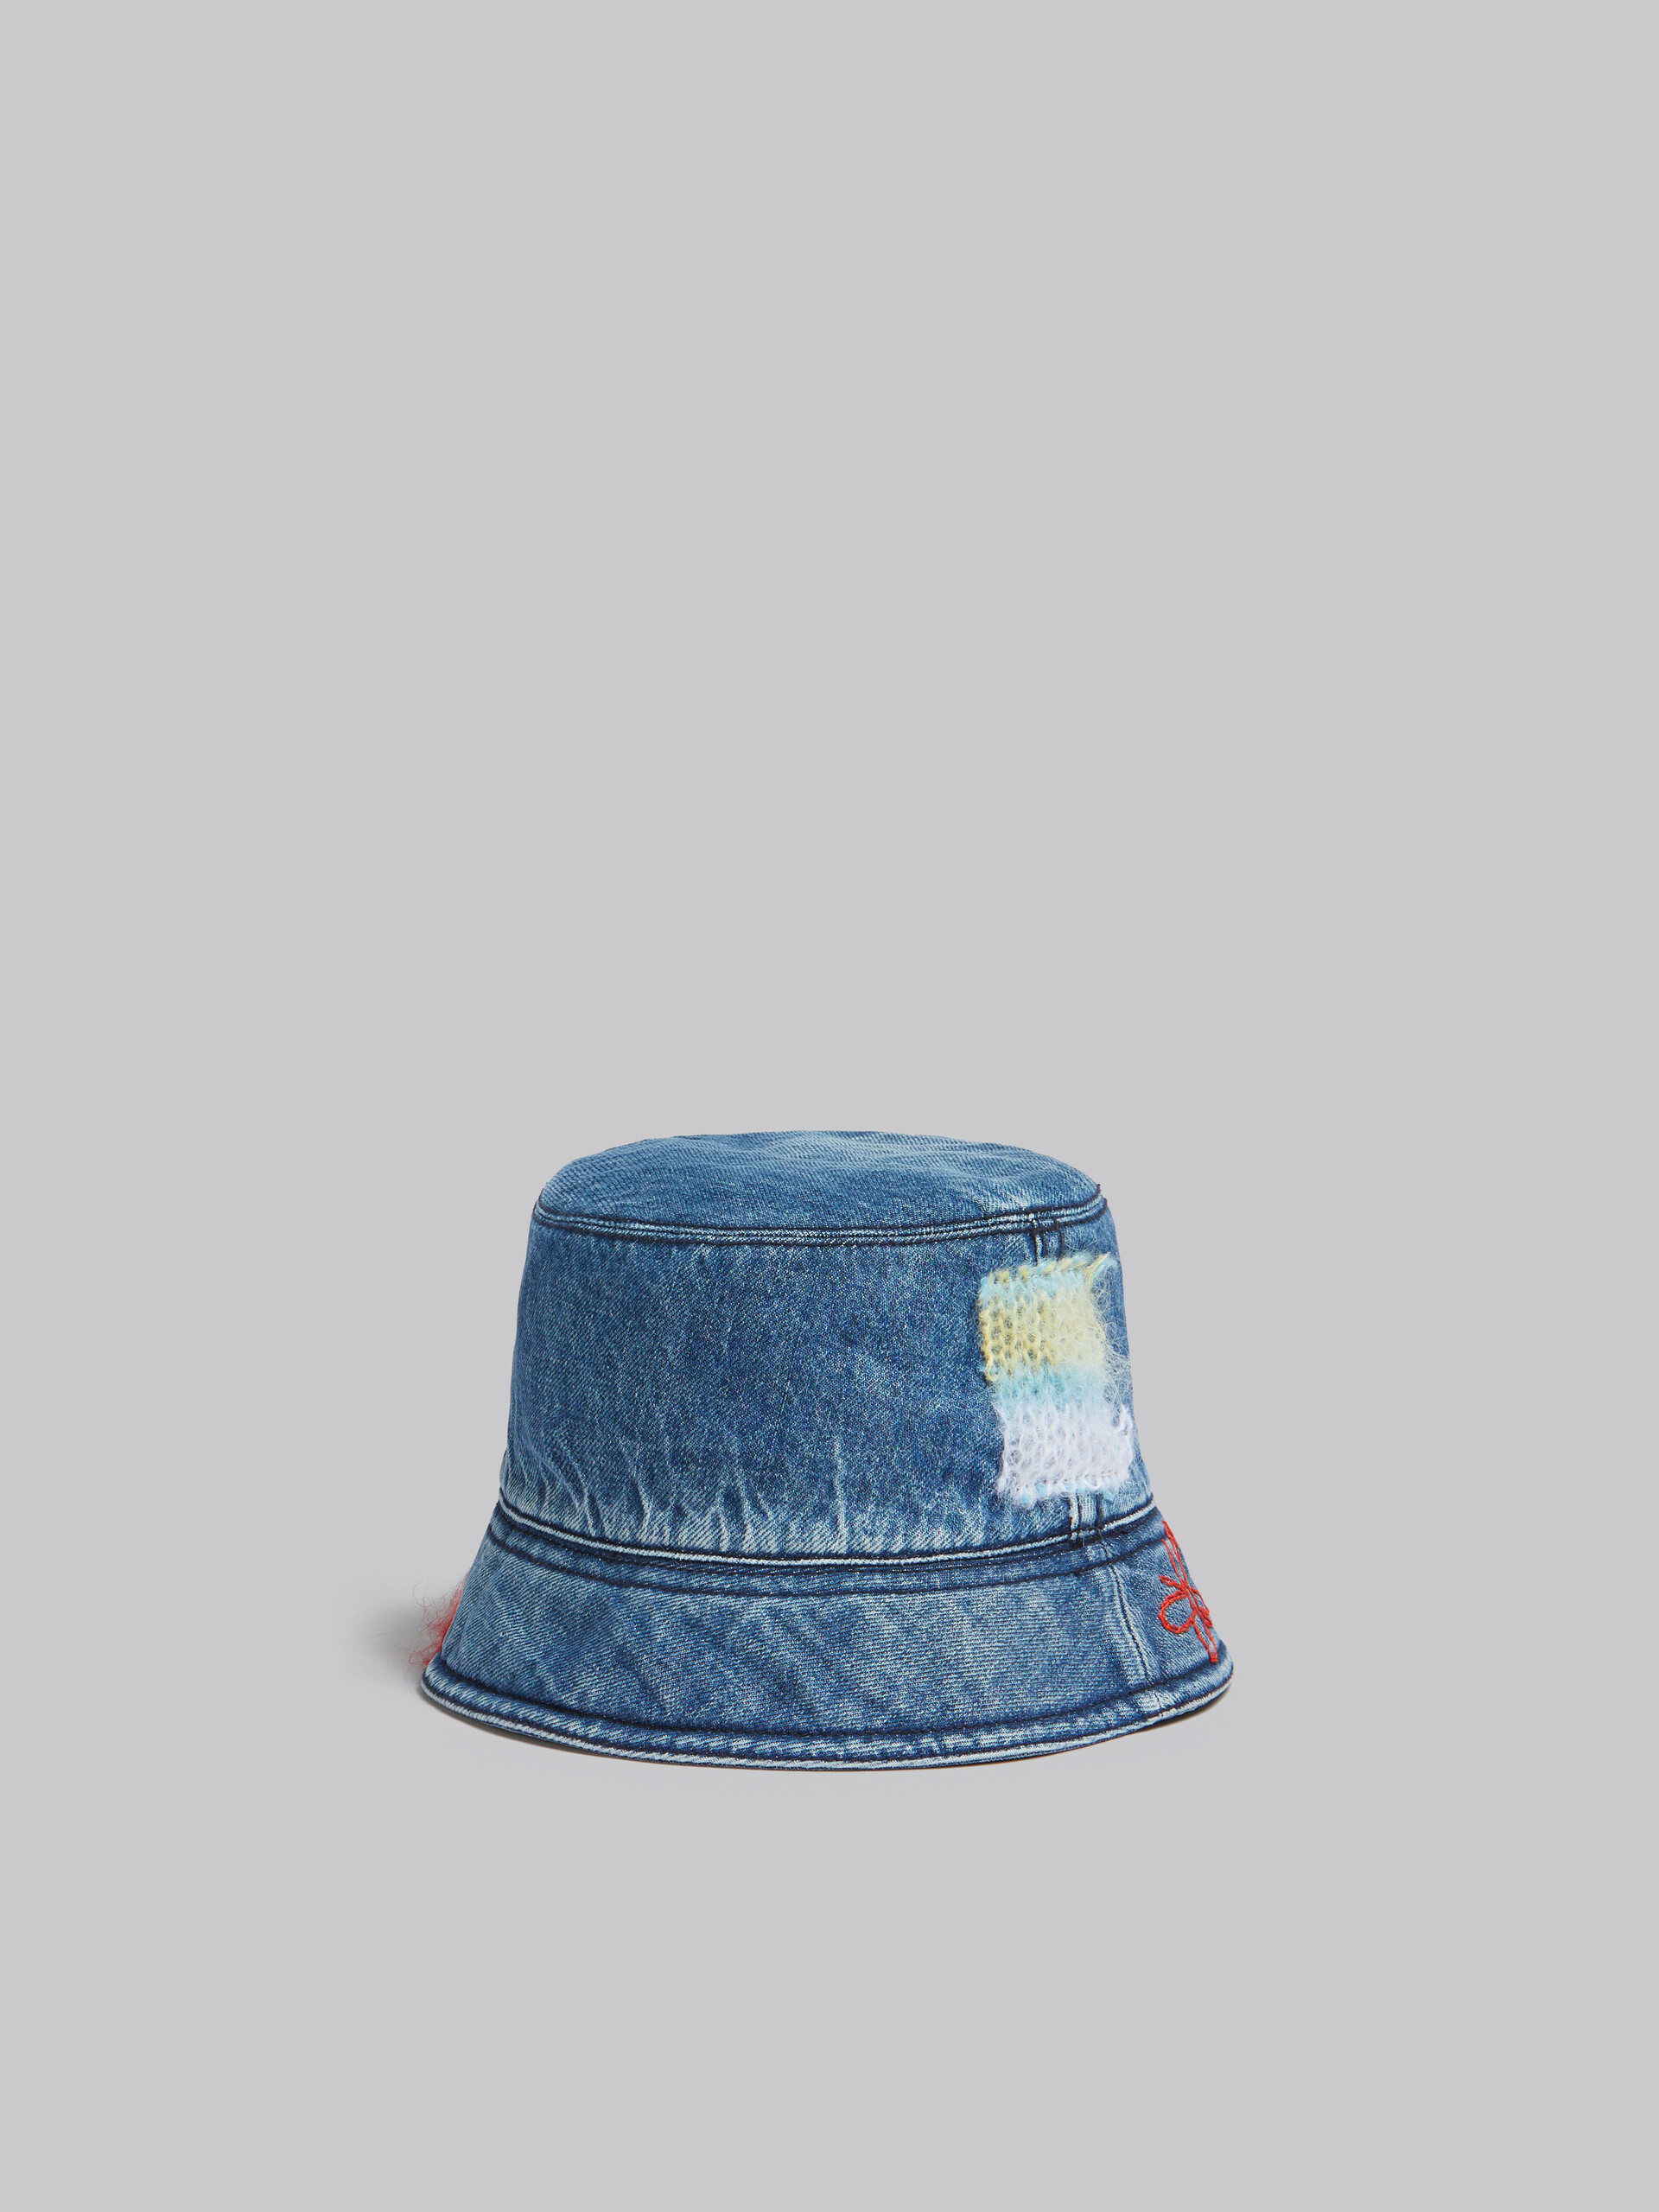 Cappello bucket in denim blu con applicazioni in mohair - Cappelli - Image 3